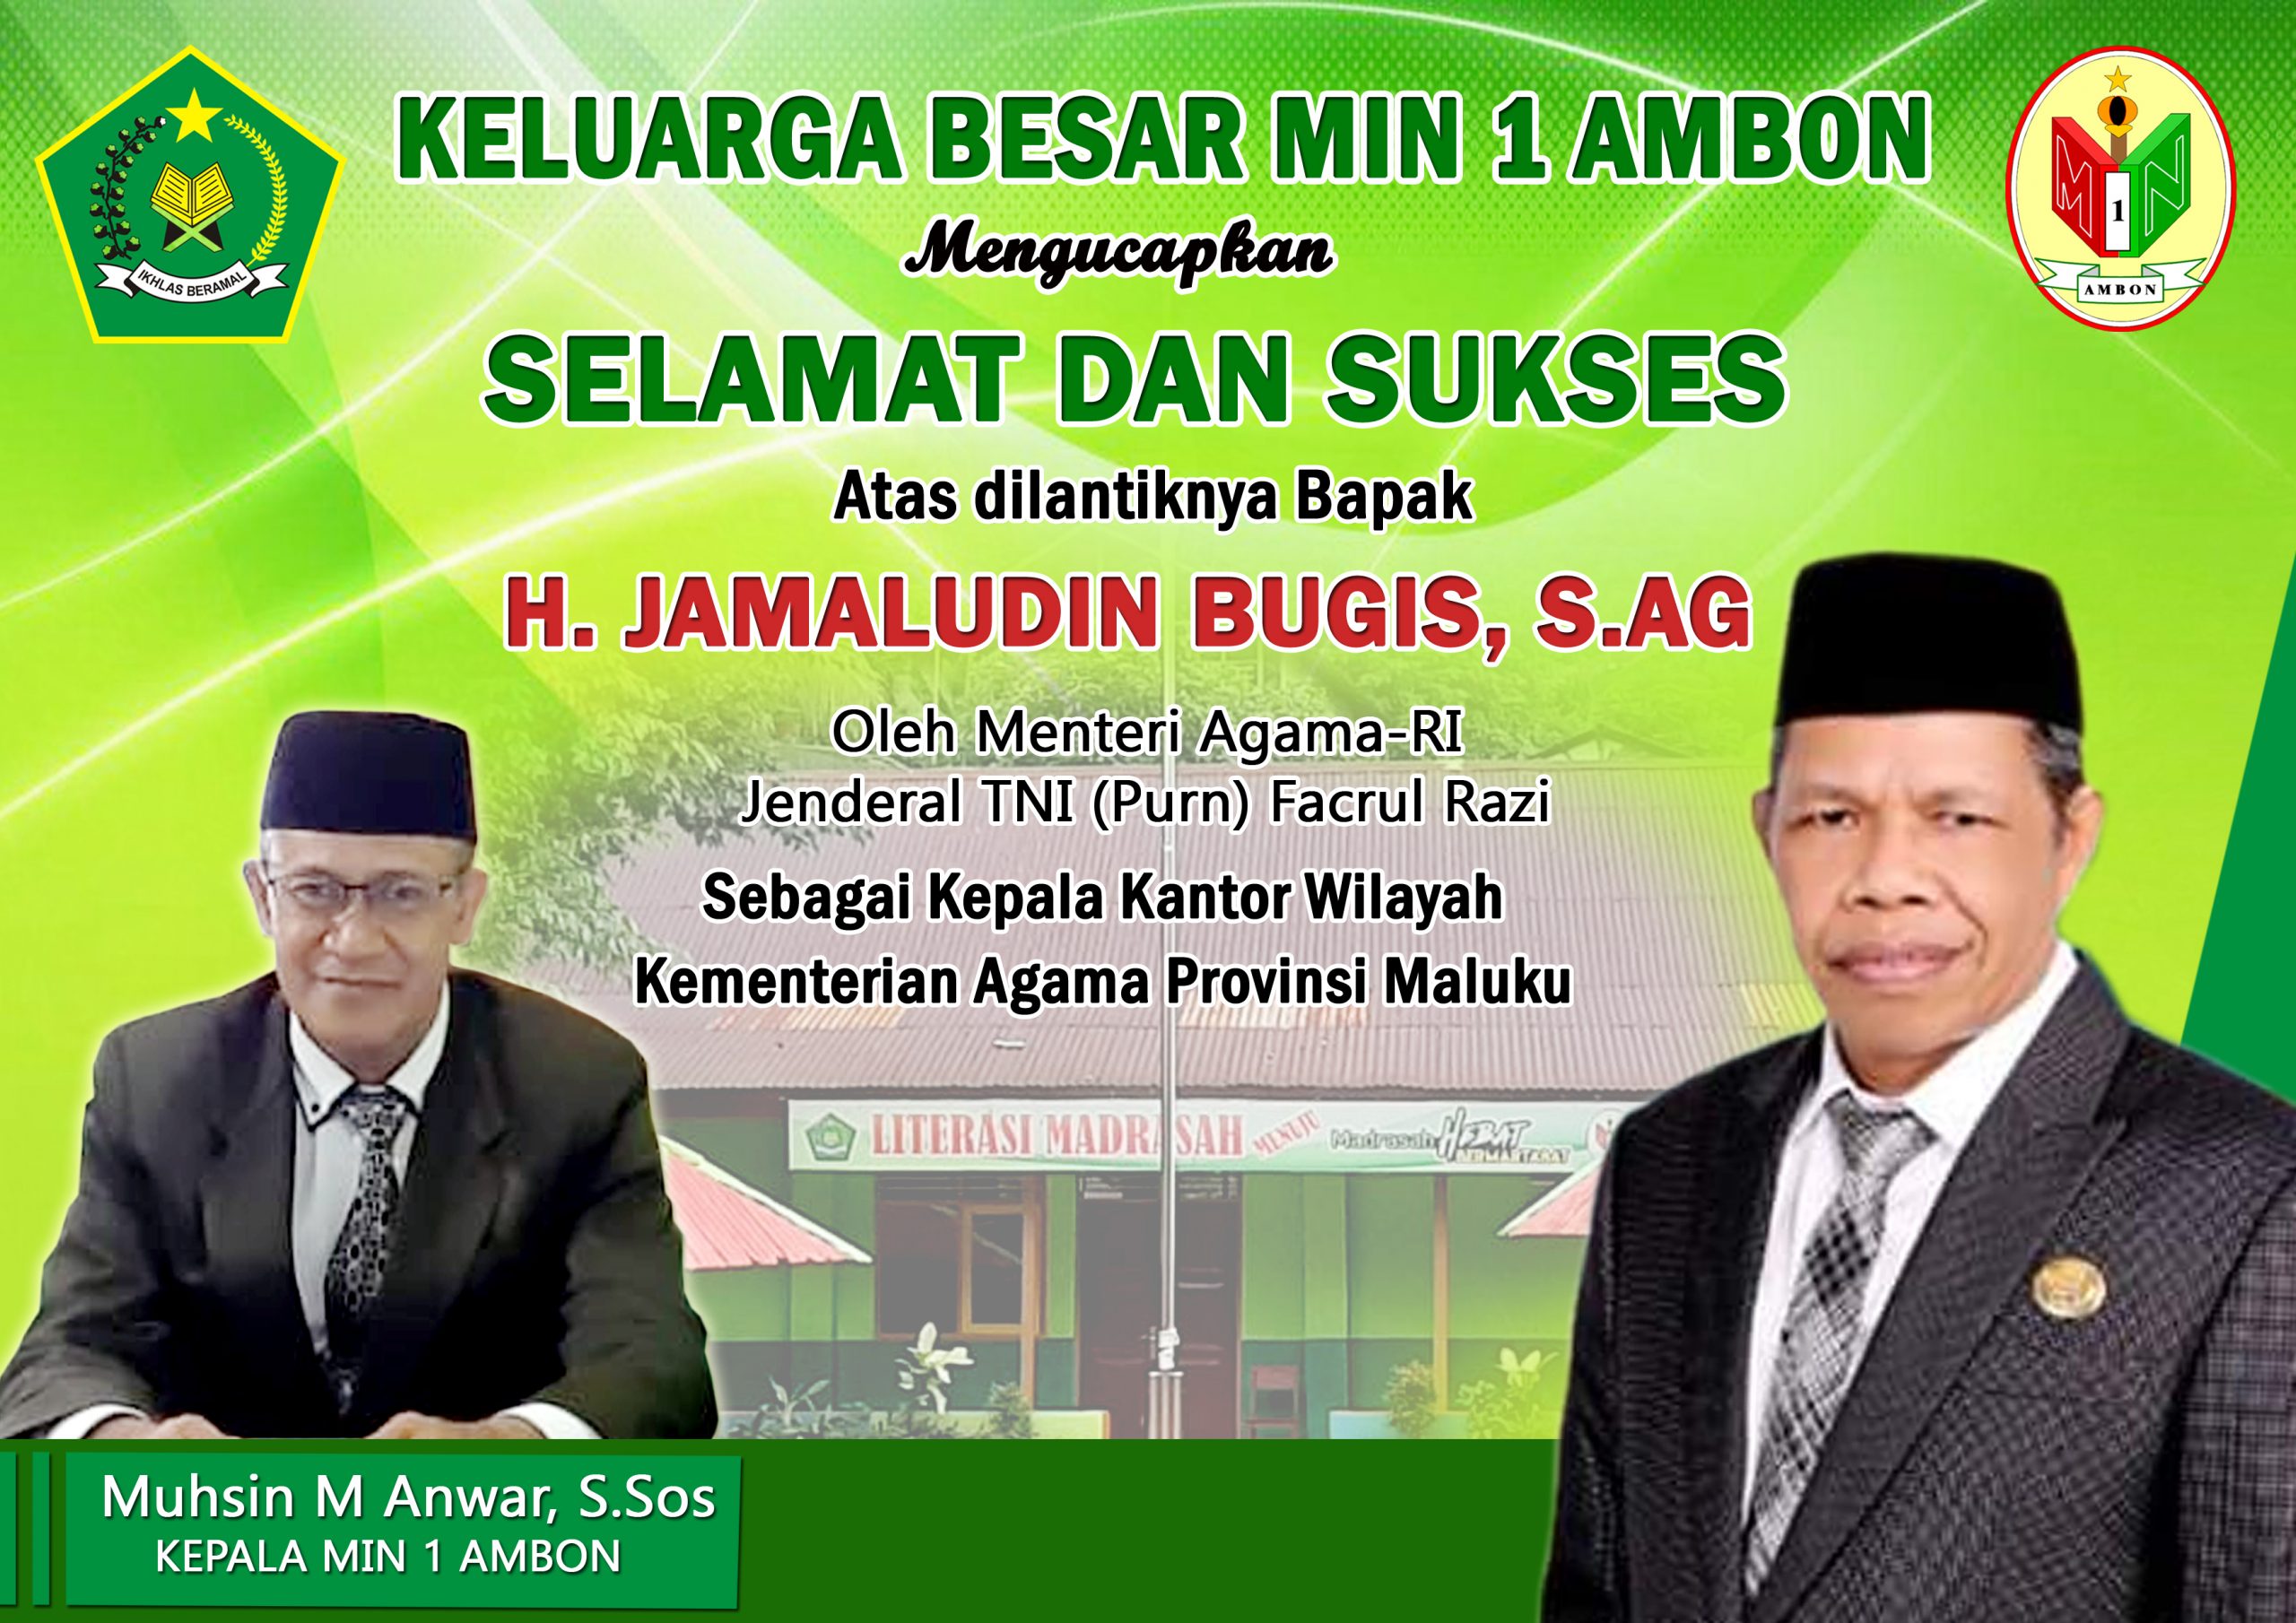 Salah satu ucapan selamat kepada atas dilantiknya Jamaludin Bugis sebagai Kakanwil Kementerian aAgama Prov. Maluku